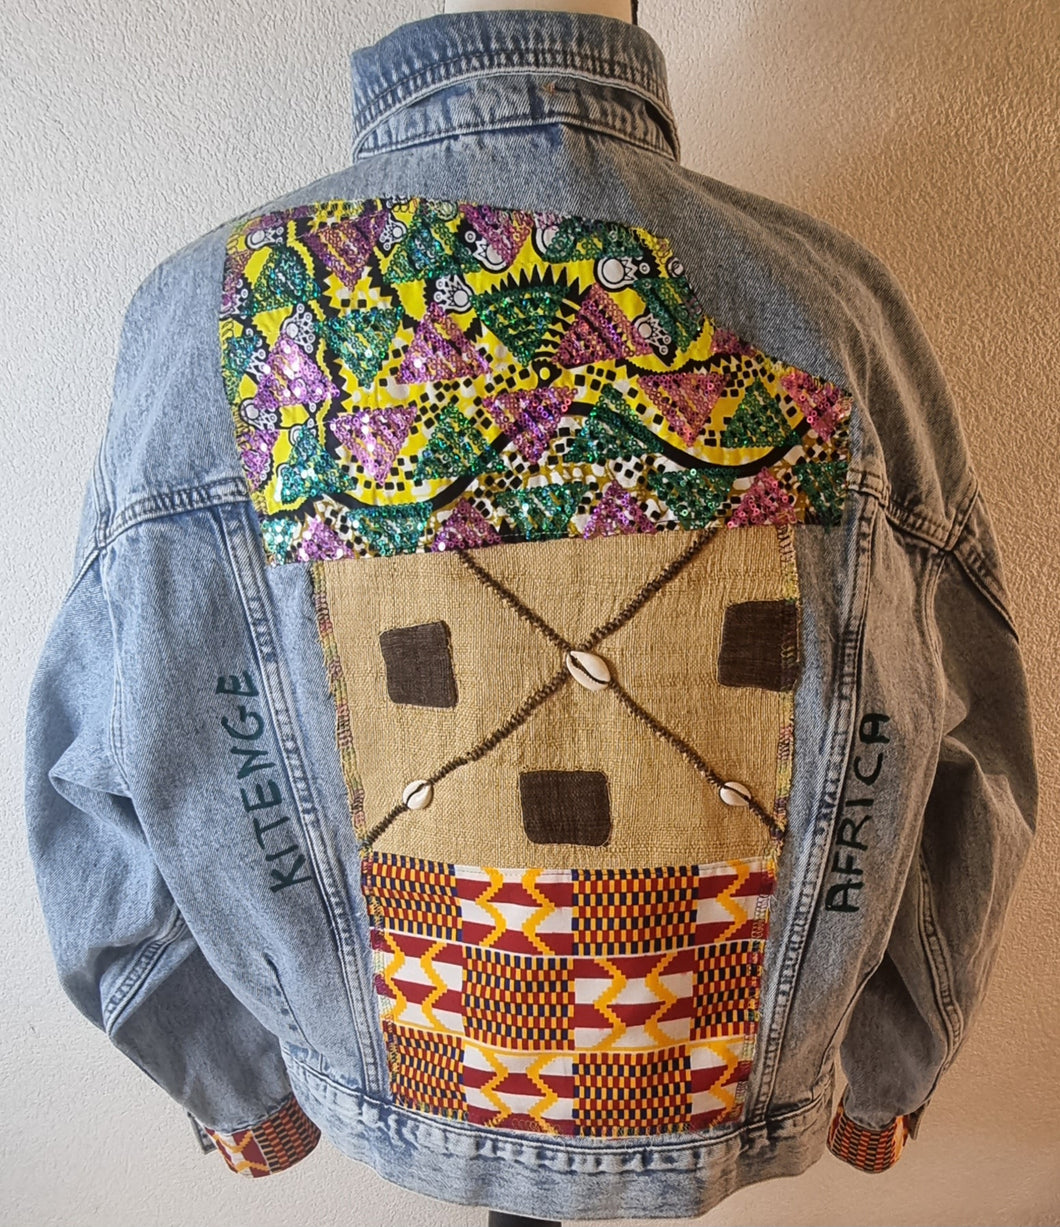 Création artisanale: veste denim personnalisée et patchwork wax taille M